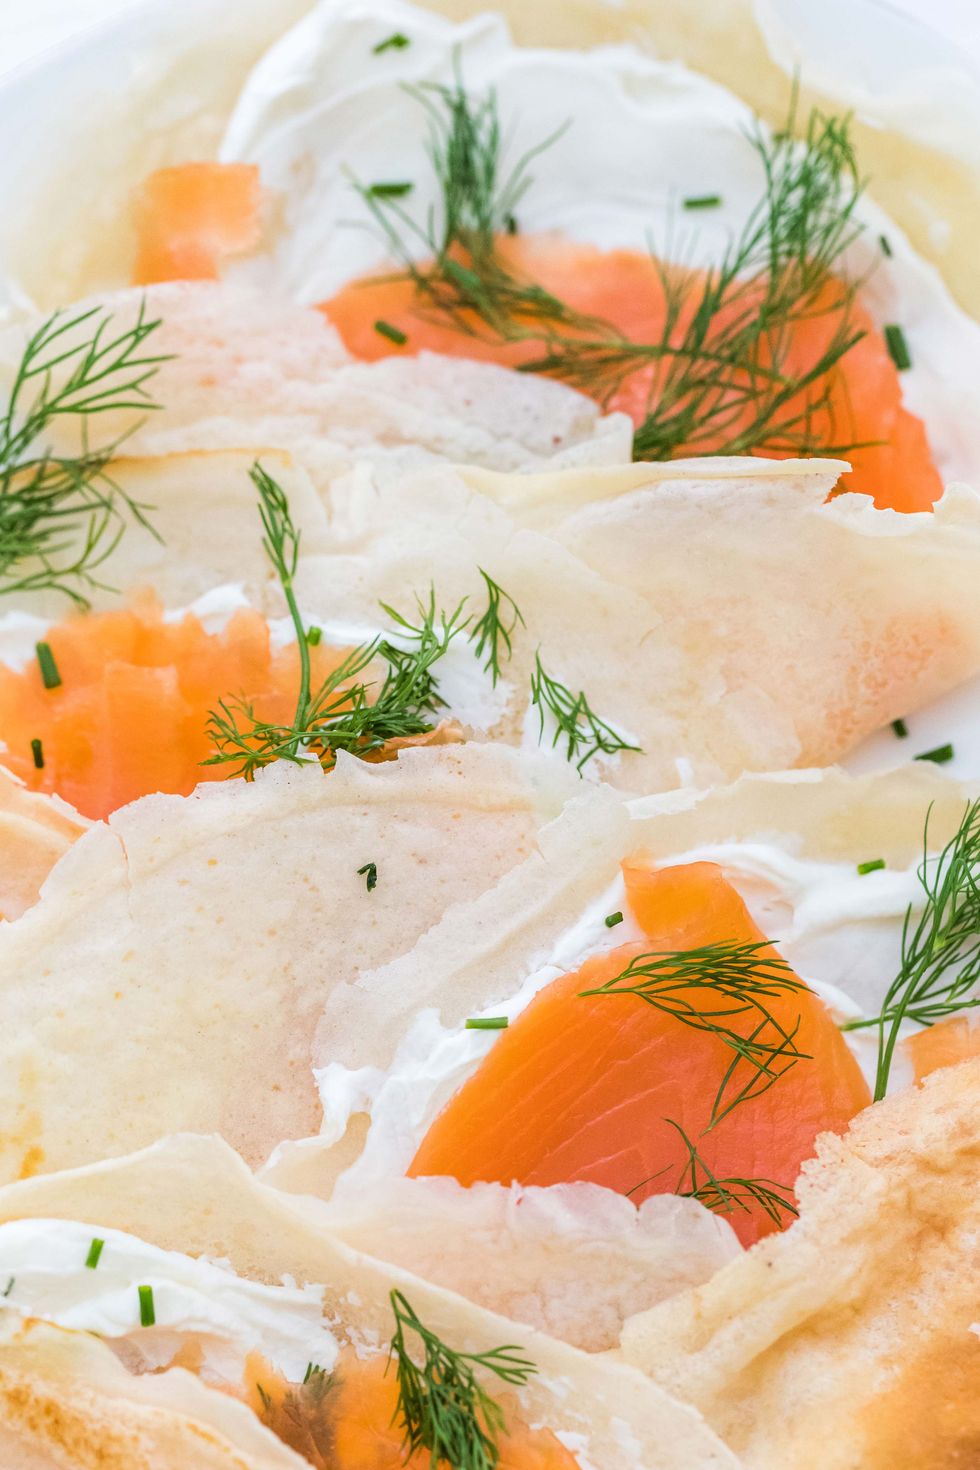 Rollitos de salmón ahumado y vegetales: un plato envuelto en obleas de arroz